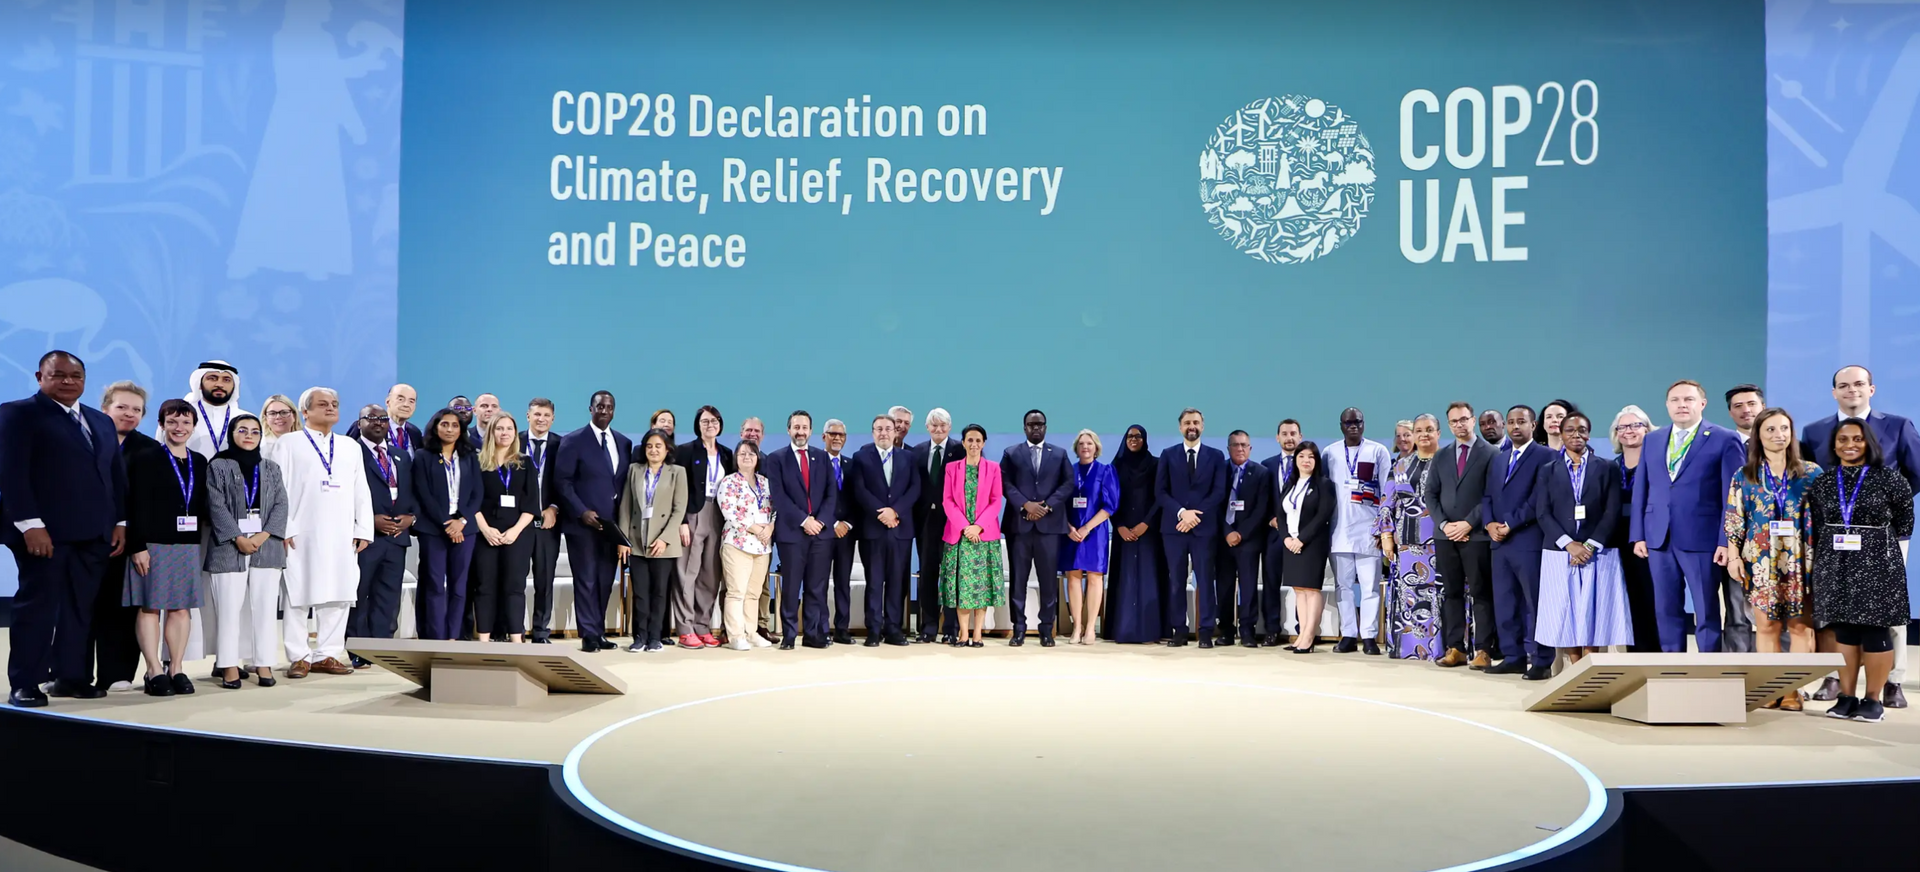 COP28 ở Dubai đạt được nhiều kết quả tích cực, bao gồm cả việc đưa Ngày Sức khoẻ vào chương trình nghị sự. (Ảnh: COP28)